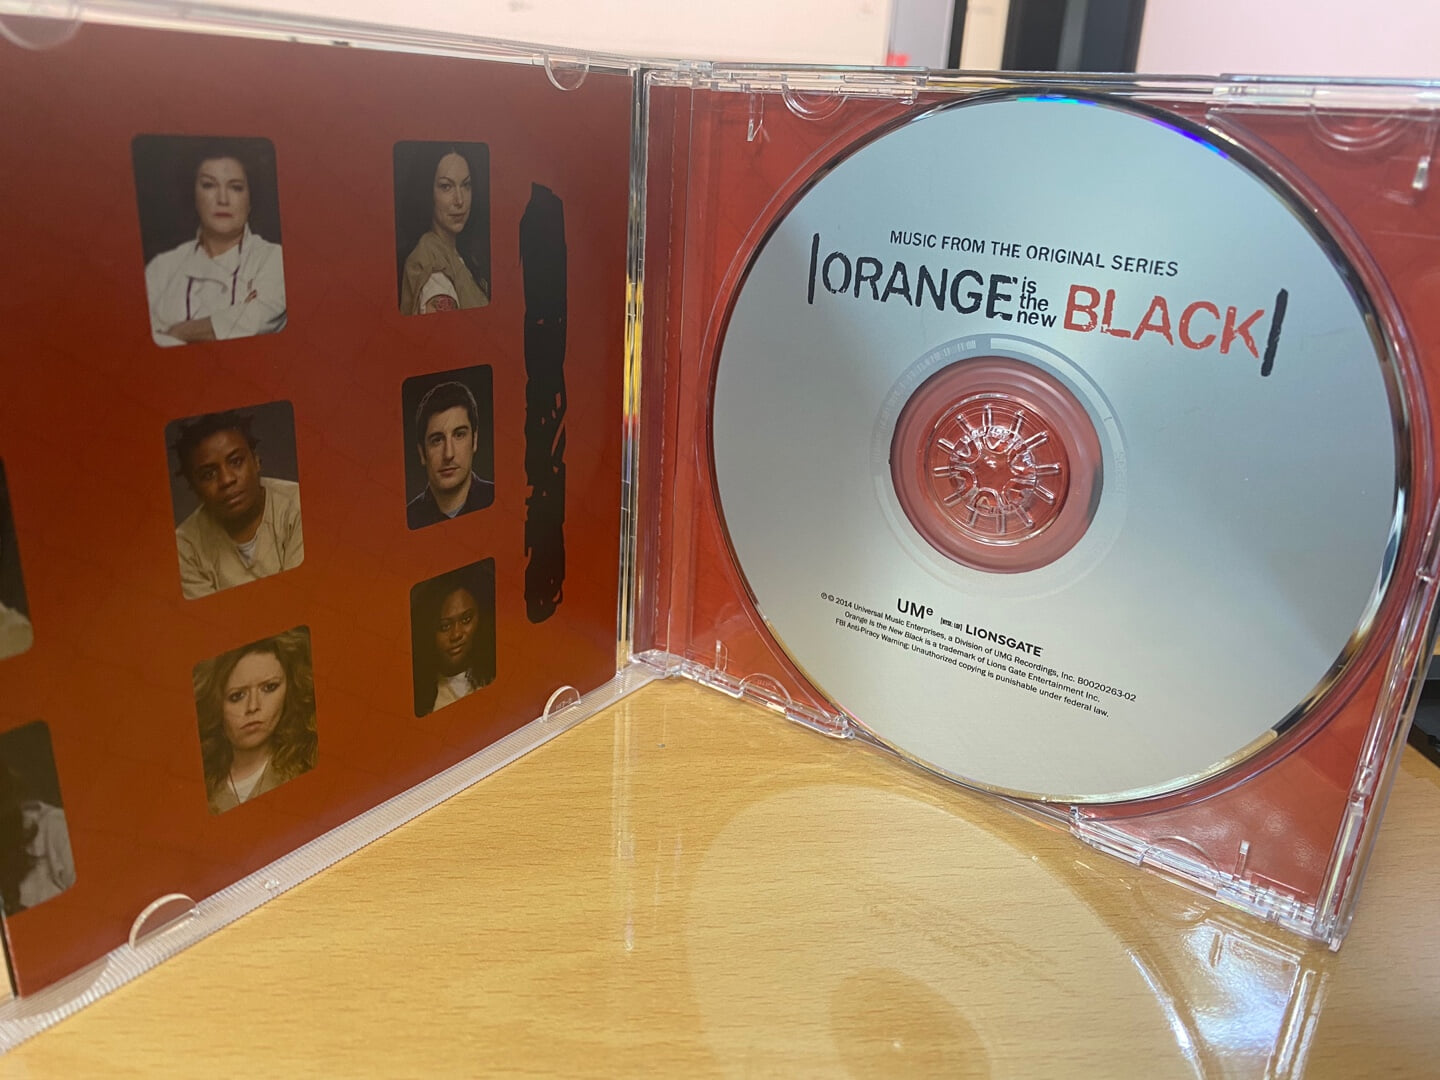 오렌지 이즈 더 뉴 블랙 - Orange Is The New Black OST [U.S발매]